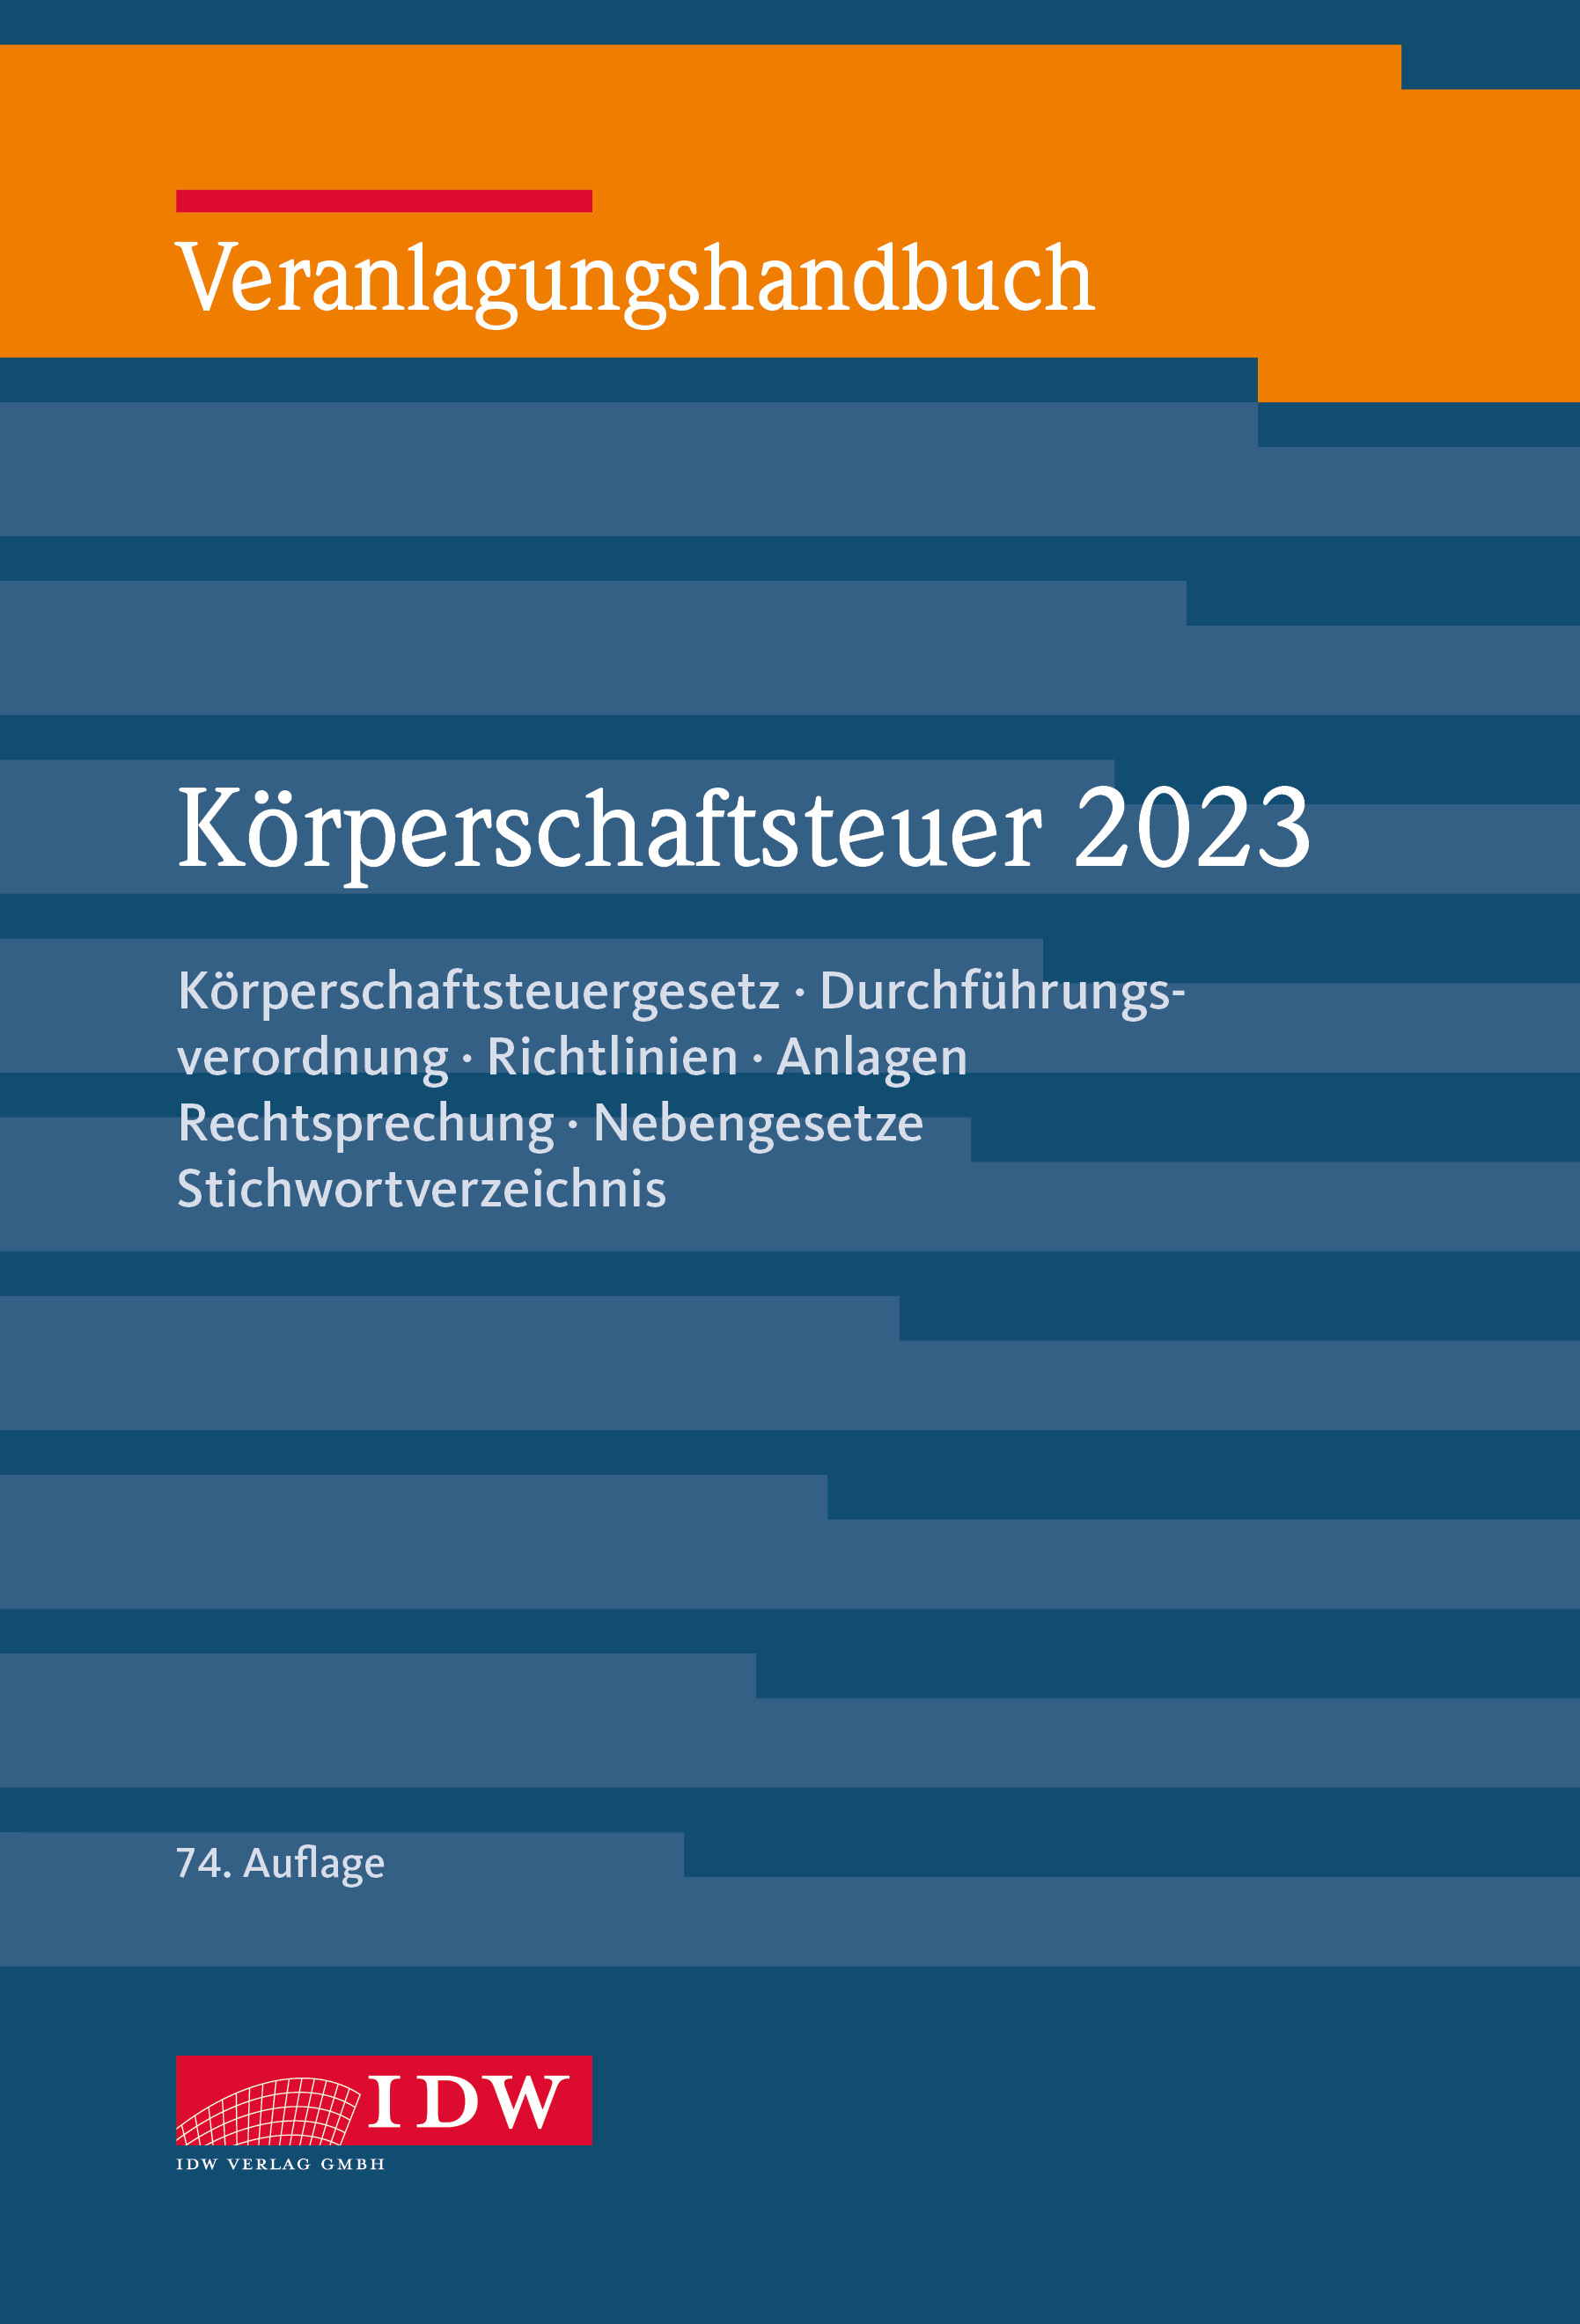 Veranlagungshandbuch Körperschaftsteuer 2023